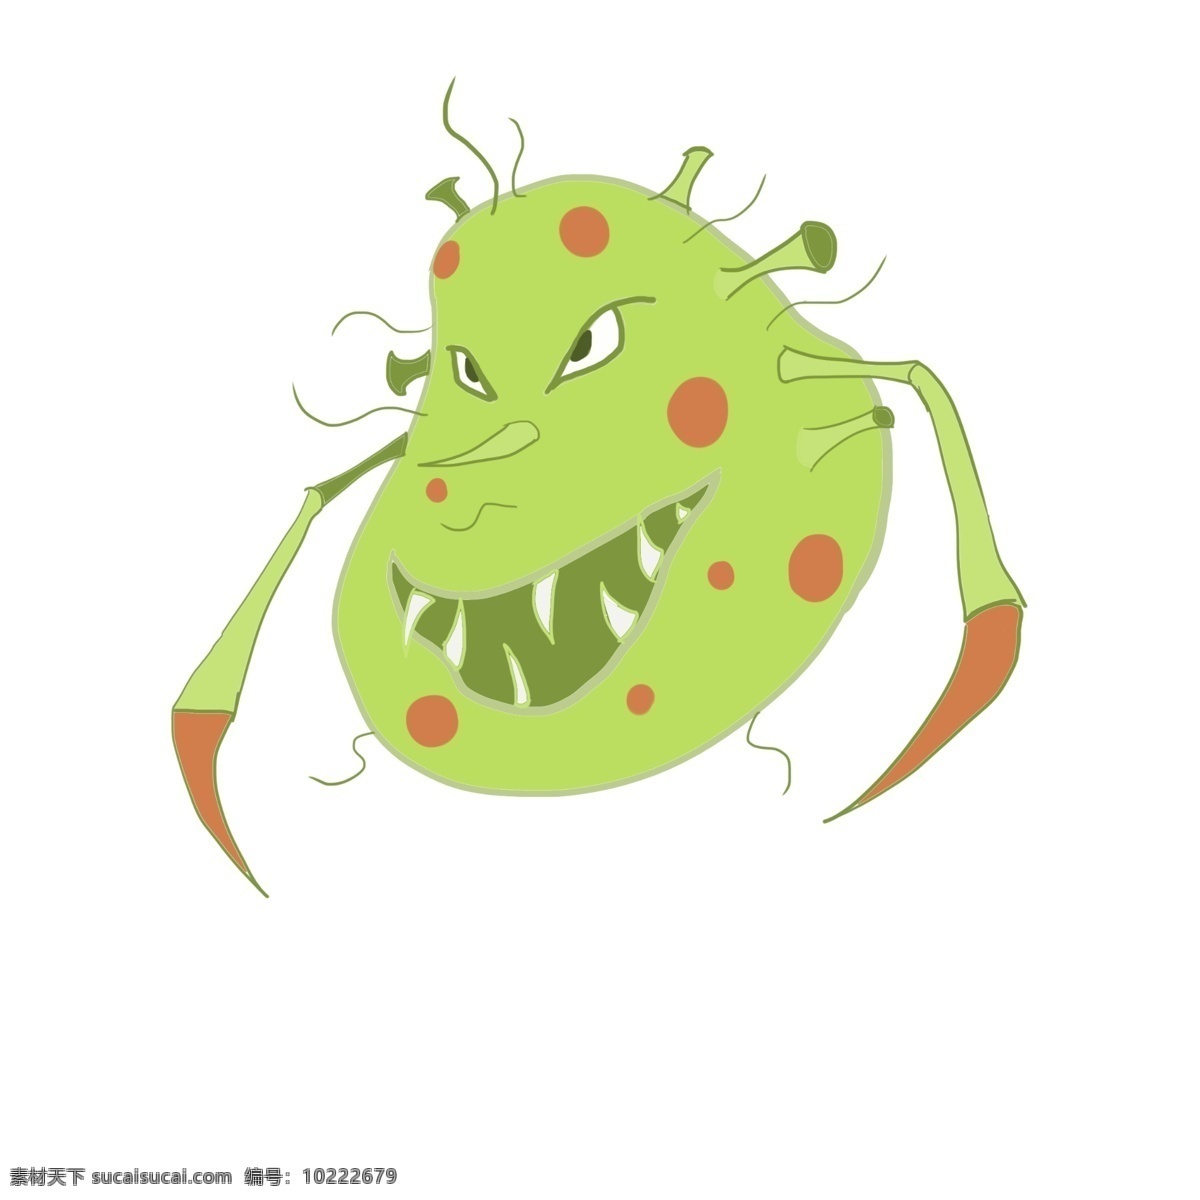 绿色 有害 细菌 插画 绿色的细菌 卡通插画 细菌插画 病菌插画 传染细菌 有害病菌 长长的胳膊